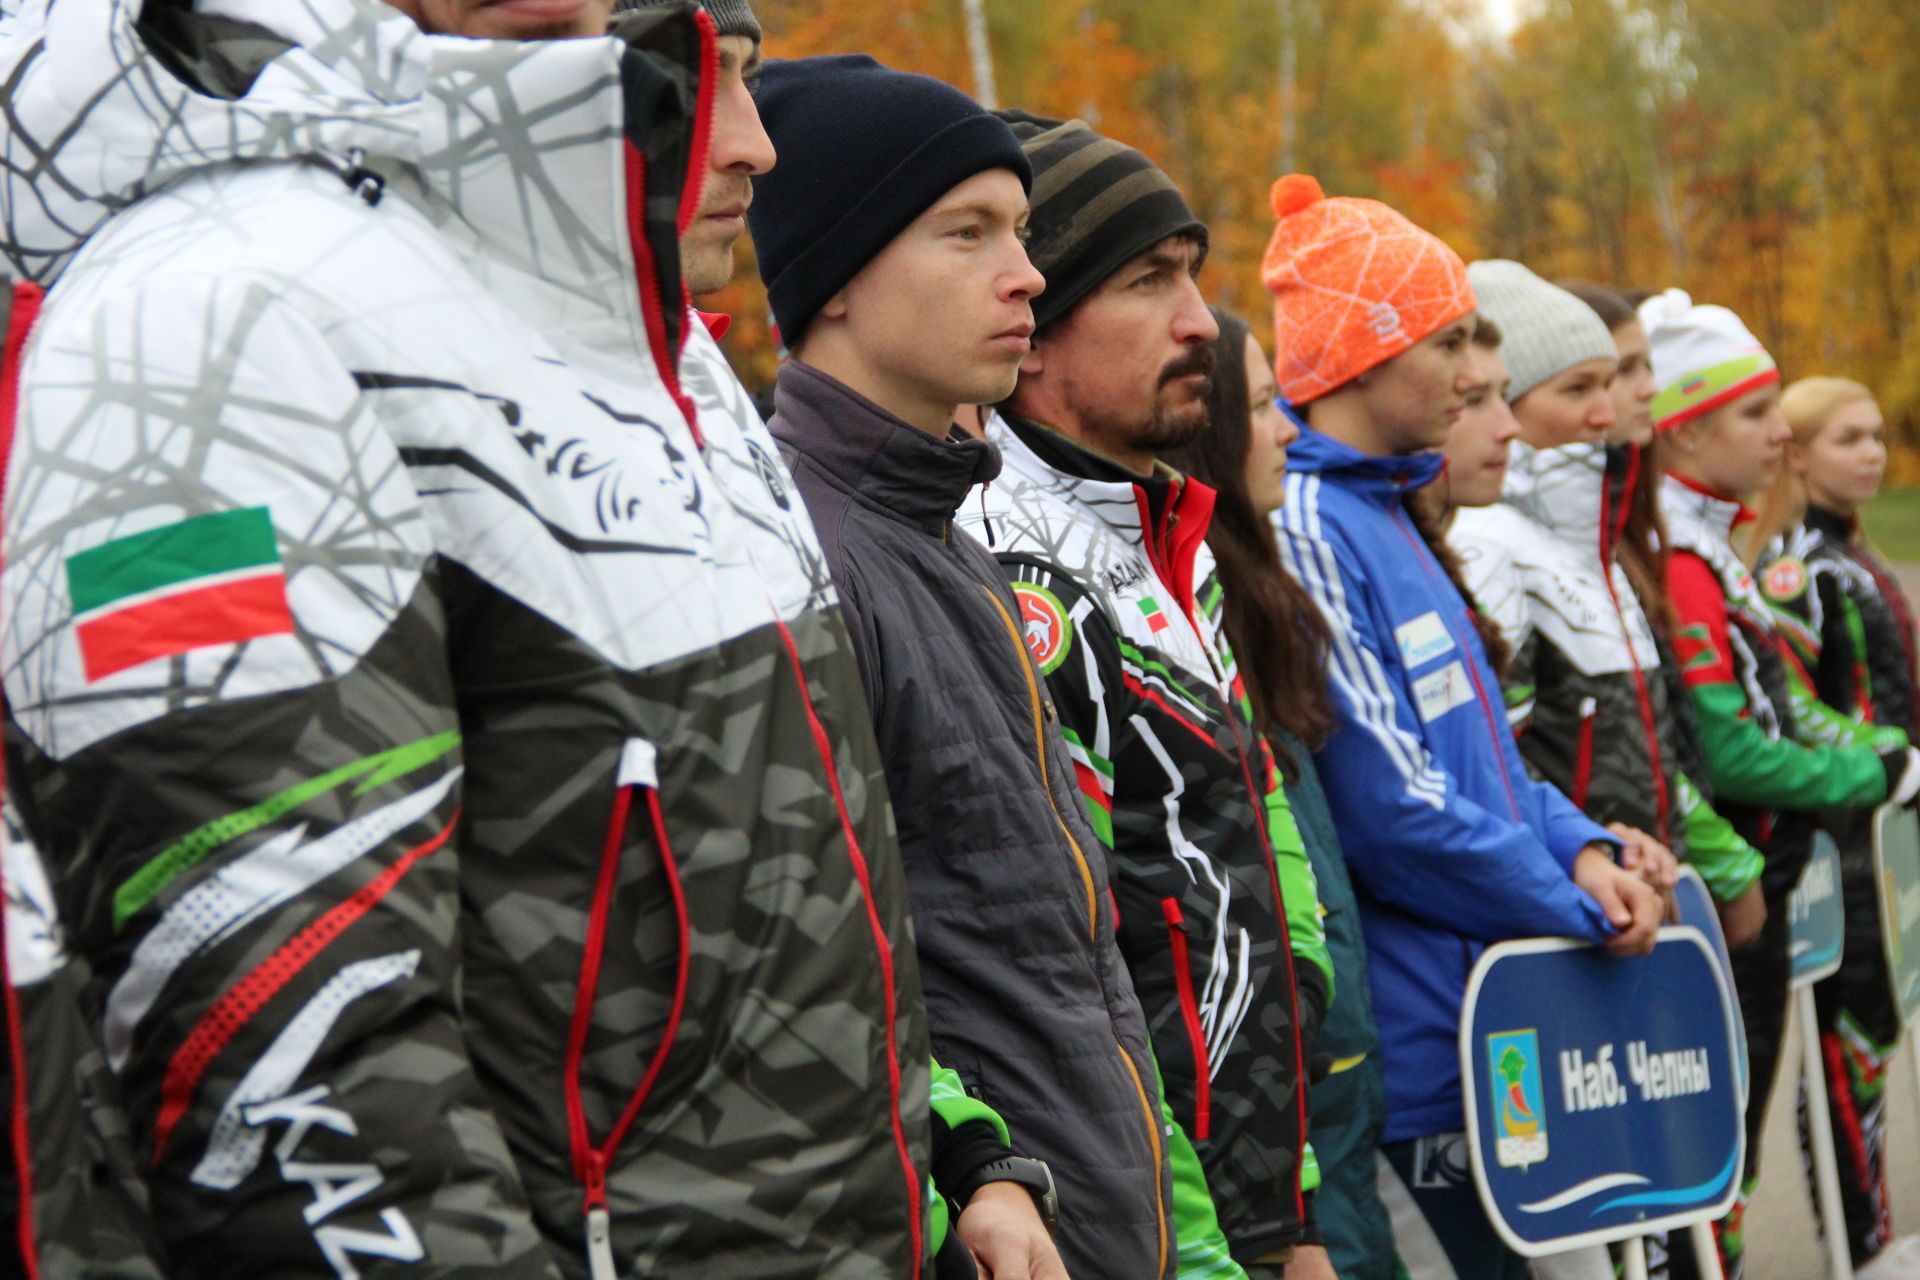 Сильнейшие лыжники Татарстана соревнуются на заинской трассе